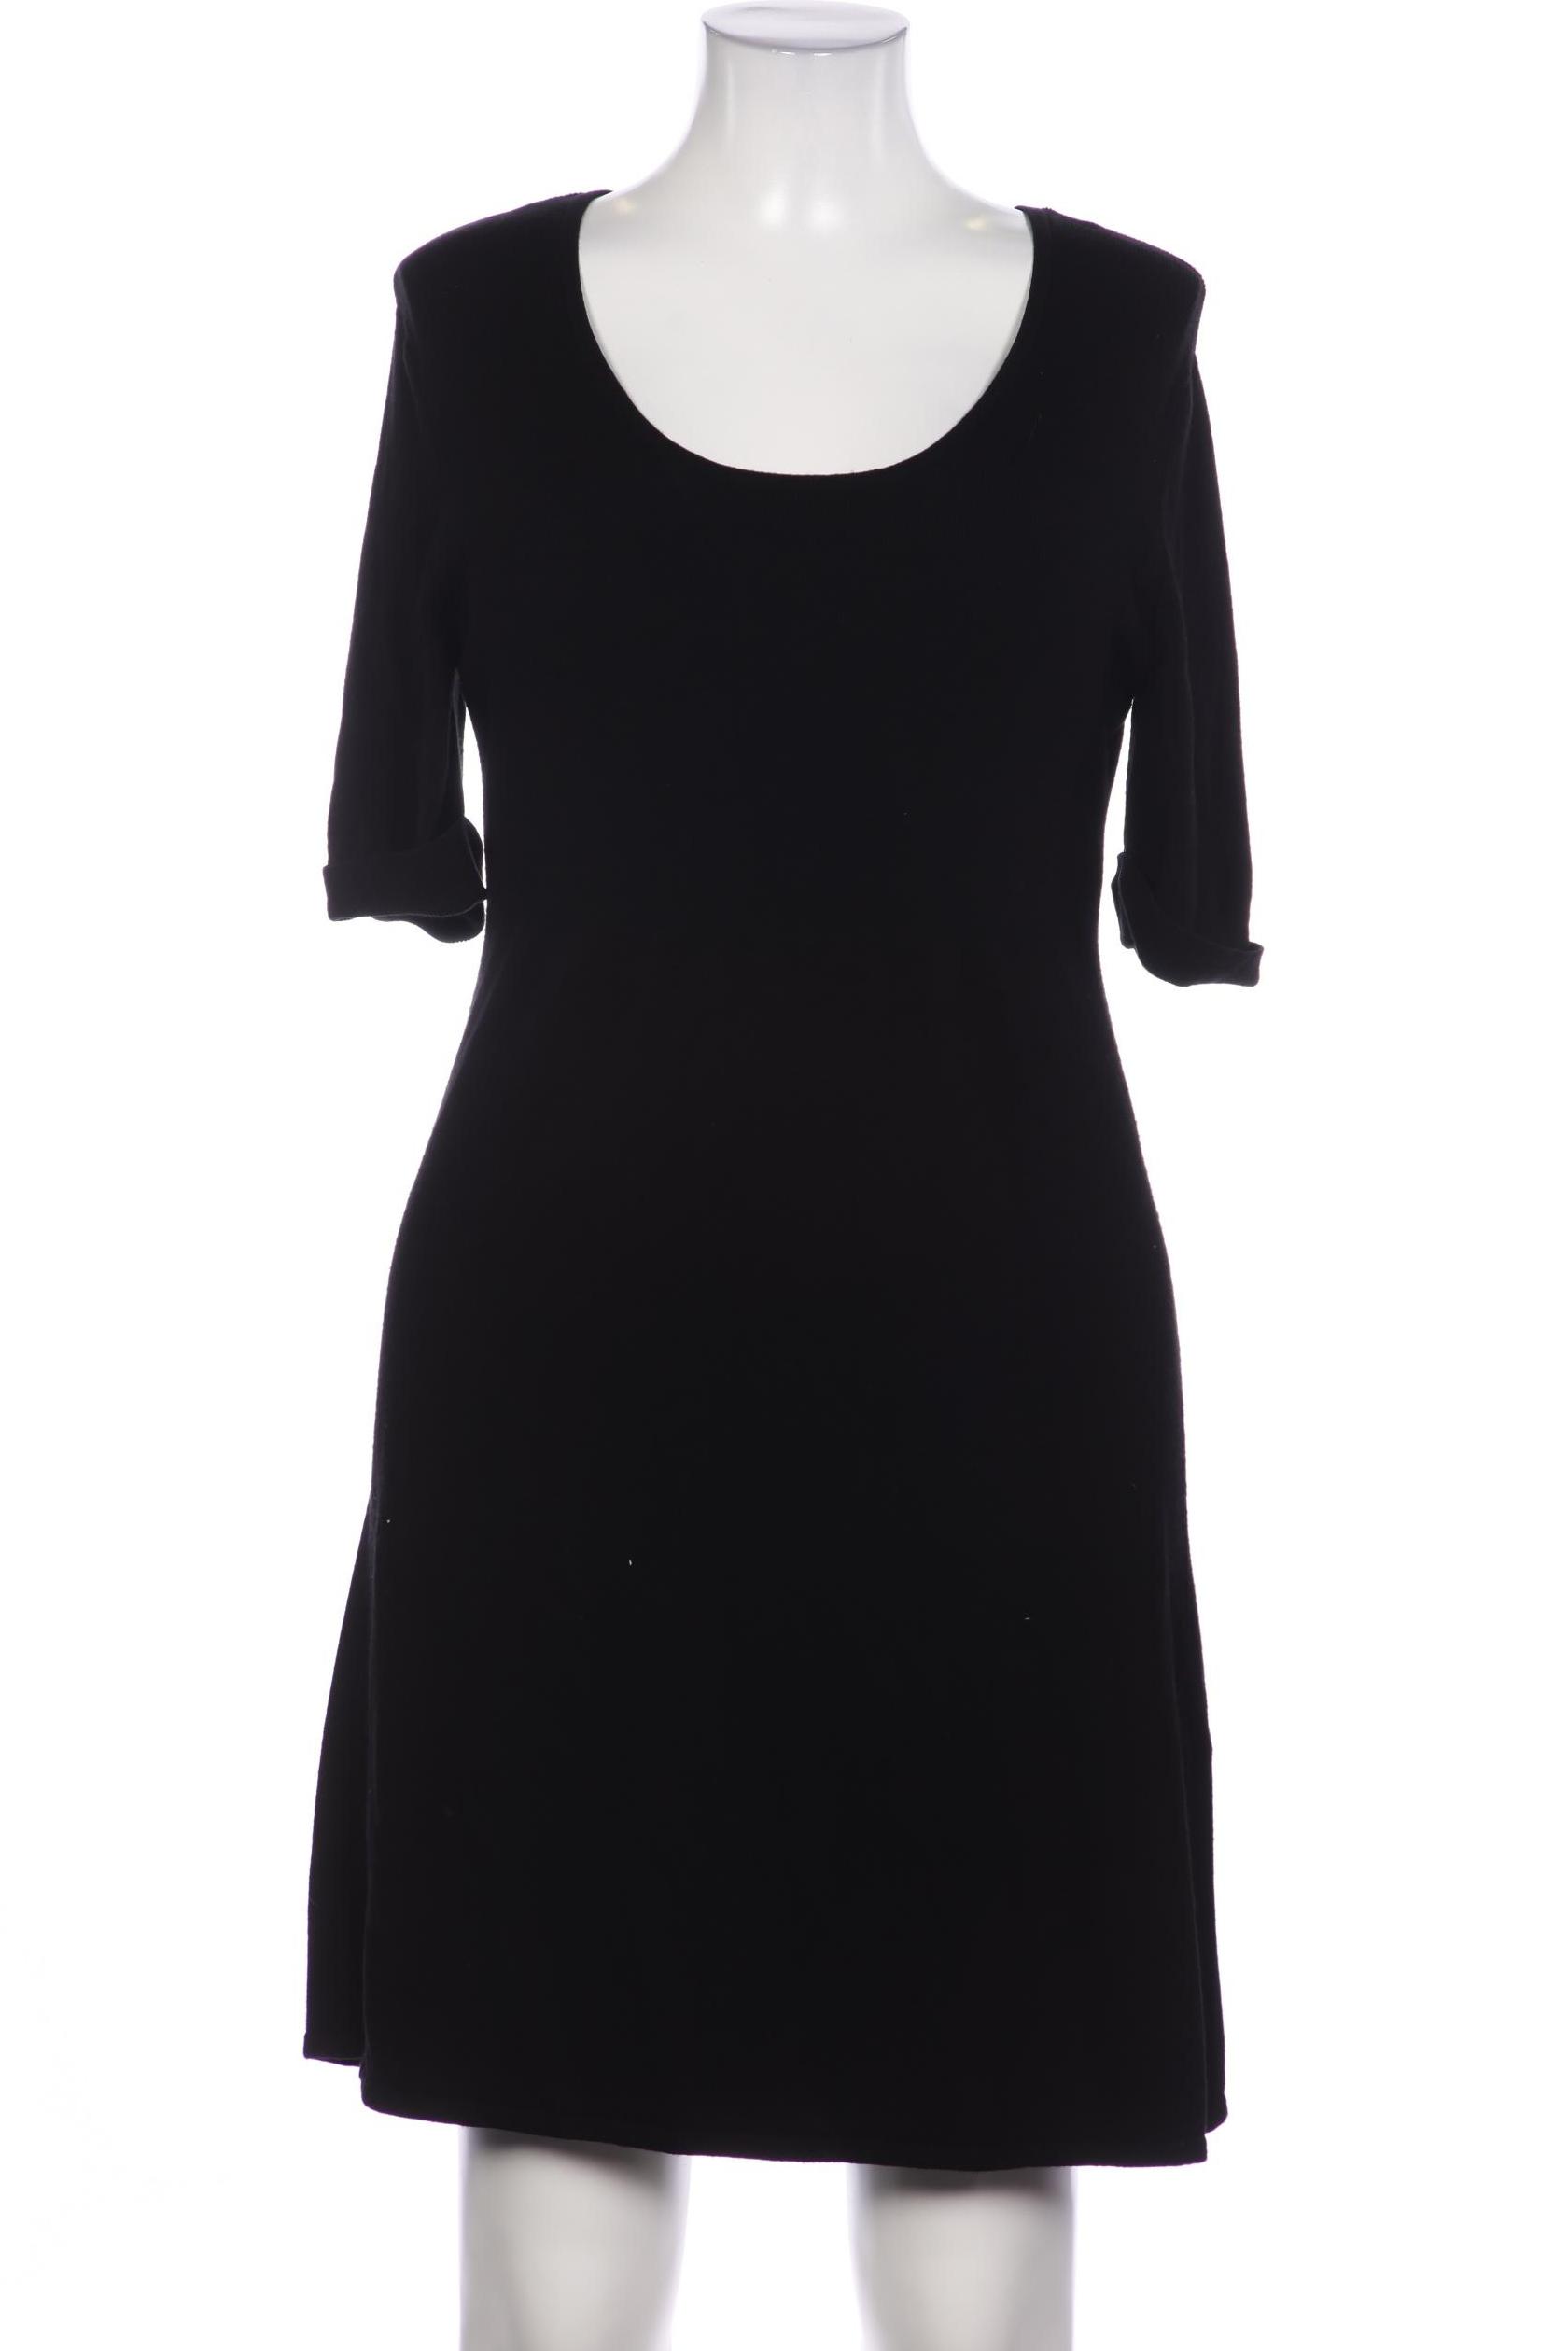 s.Oliver Selection Damen Kleid, schwarz, Gr. 42 von s.Oliver Selection